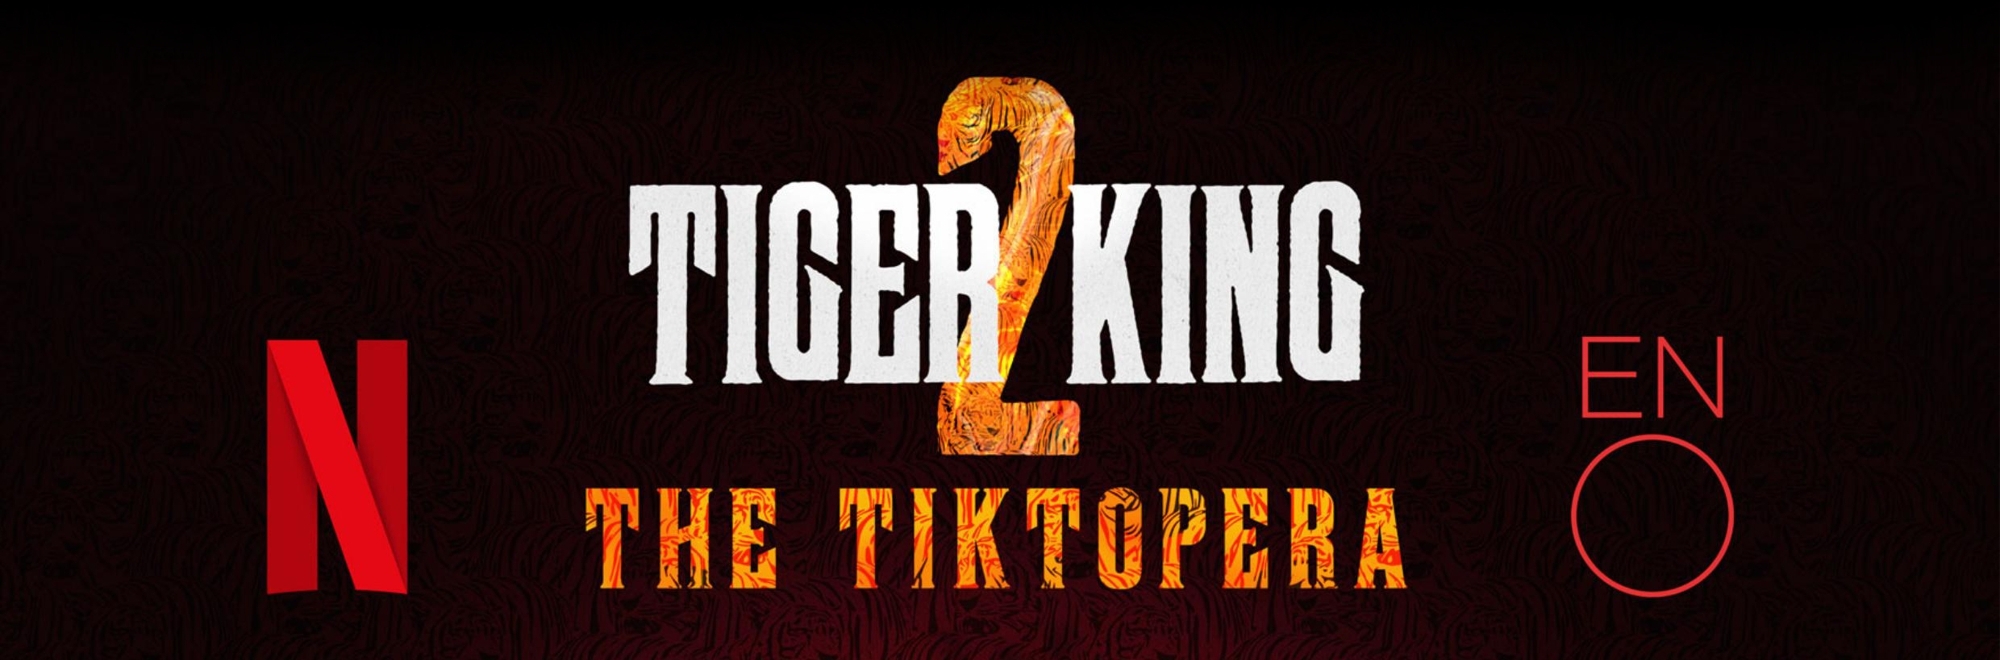 Tiger King 'The Opera' premieres on TikTok